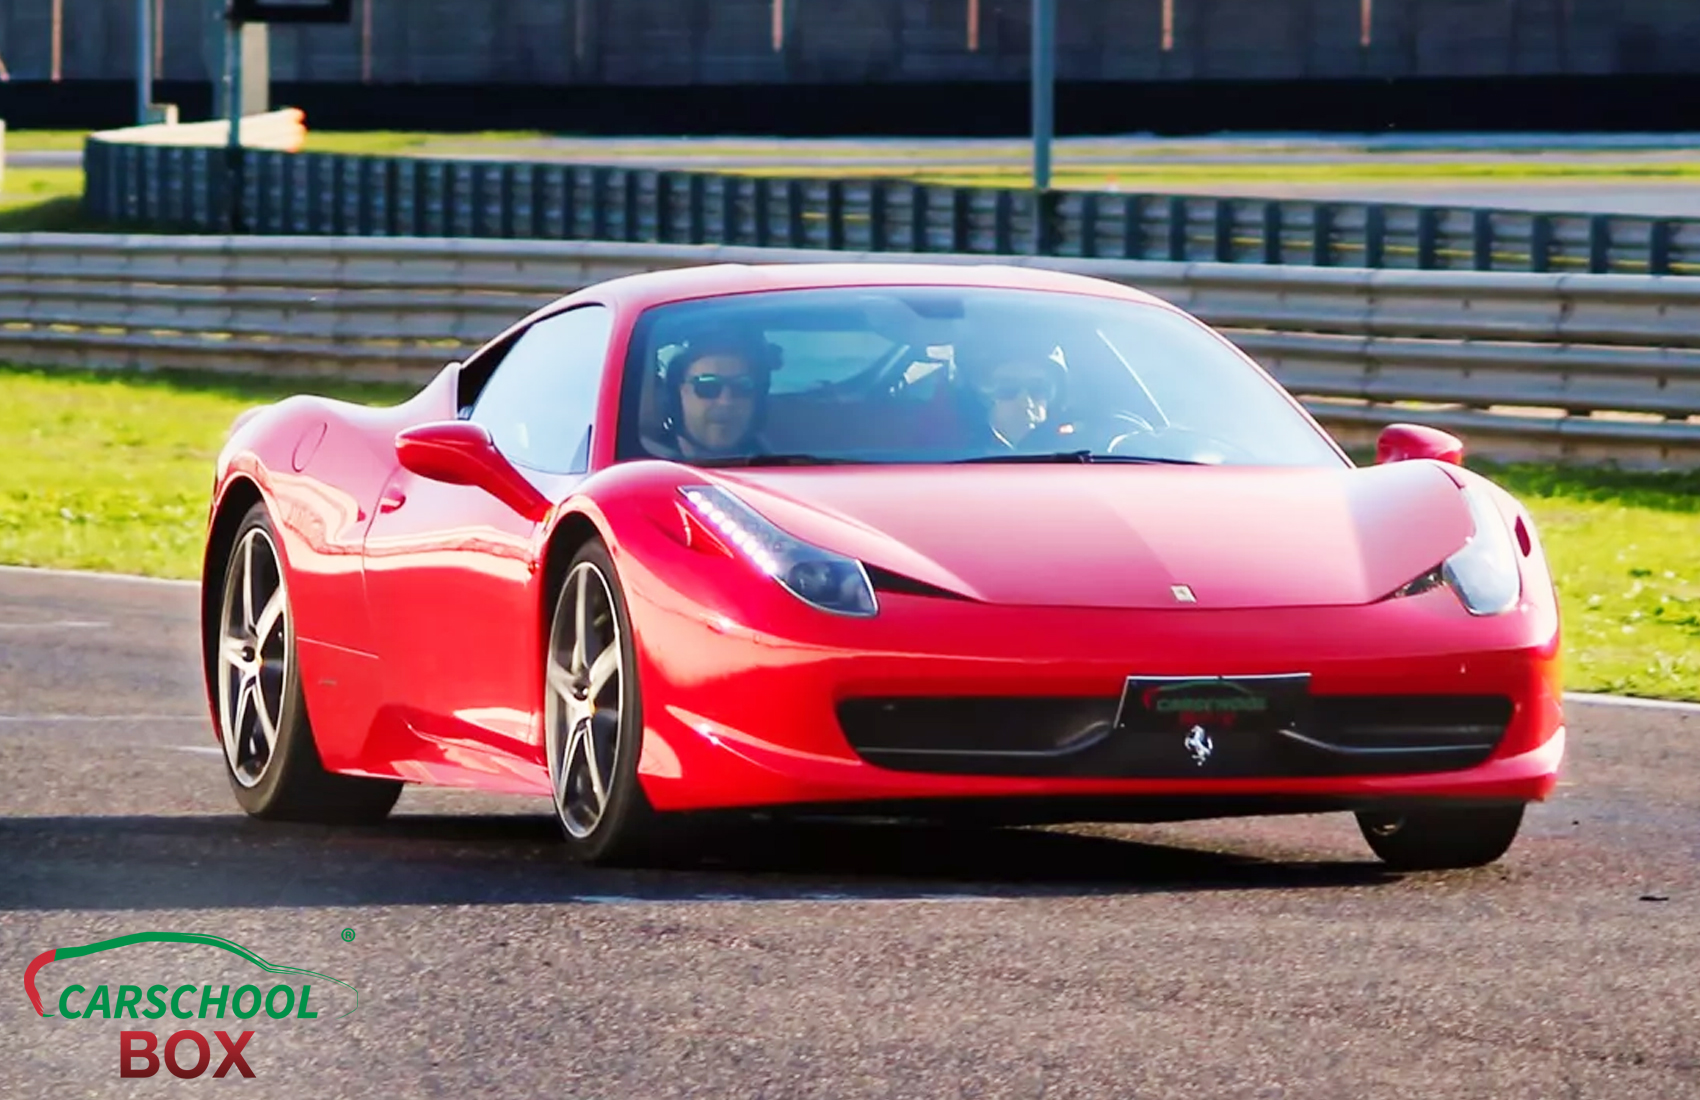 Guida Ferrari in Pista Precenicco